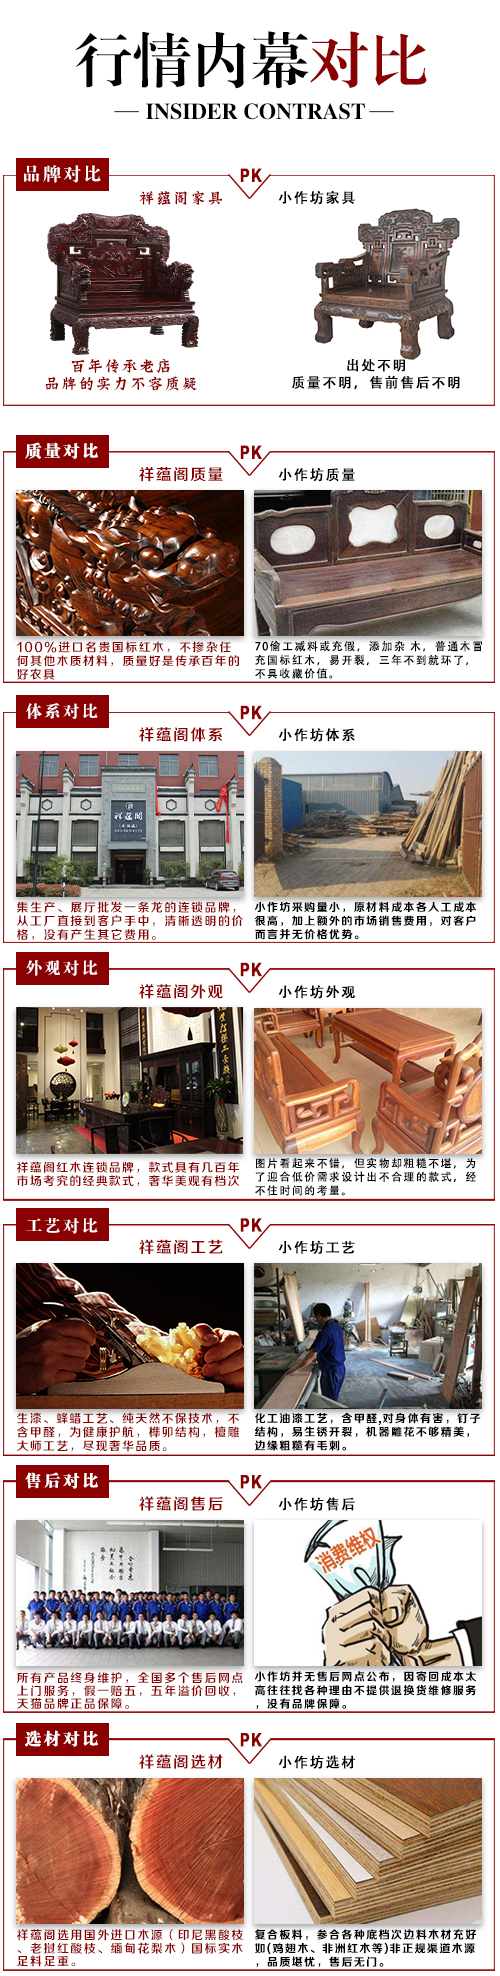 中式红木五斗柜客厅家具DG-4